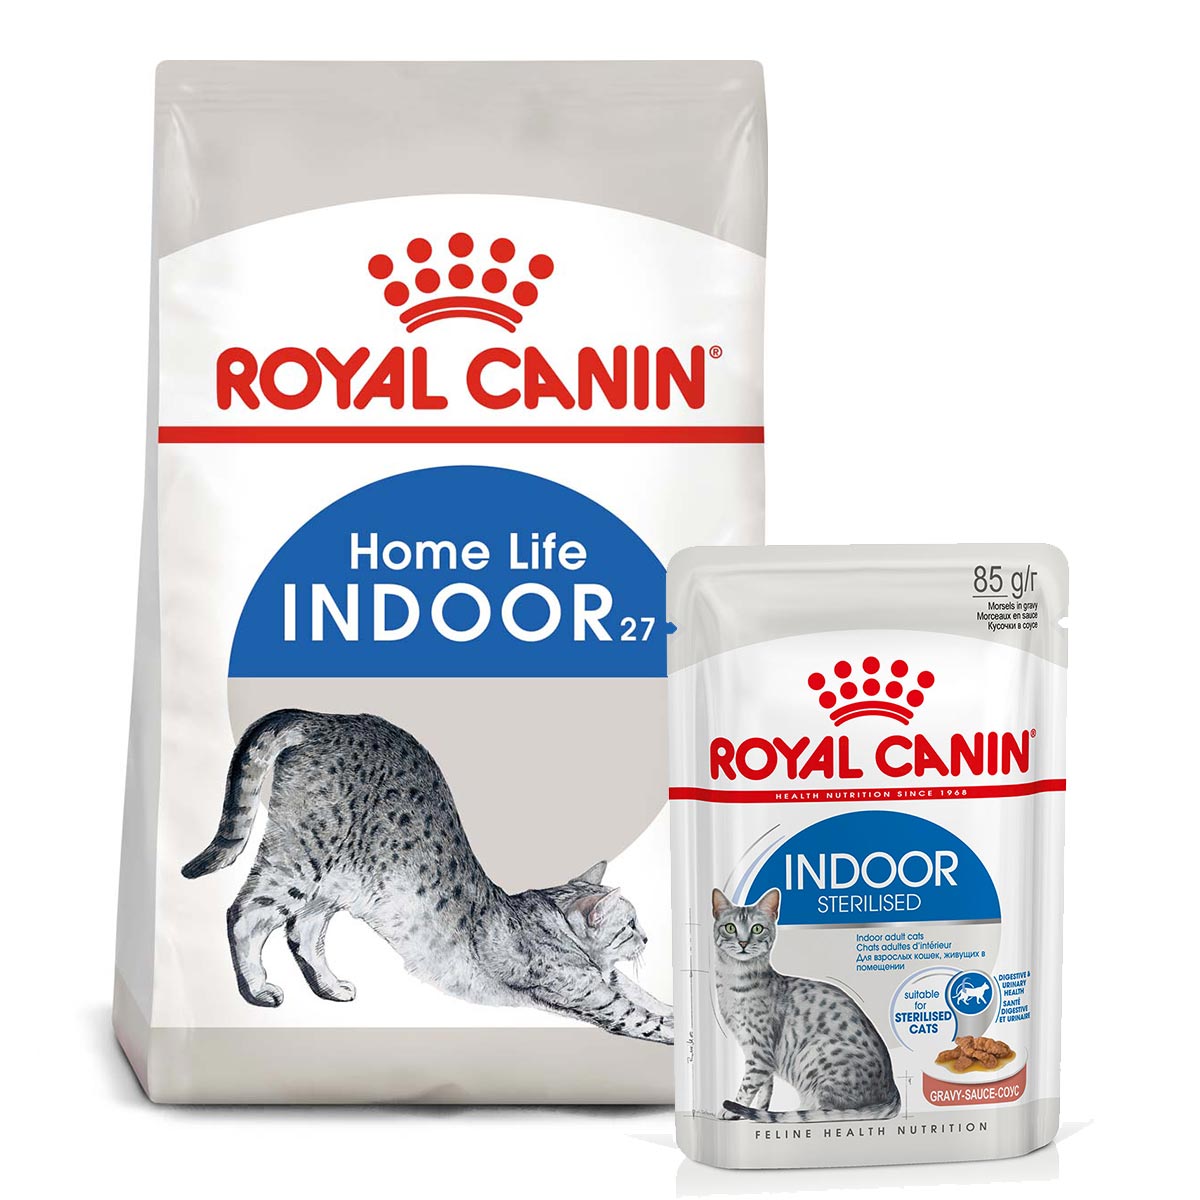 ROYAL CANIN INDOOR Trockenfutter 10kg + INDOOR Sterilised Nassfutter 48x85g von Royal Canin